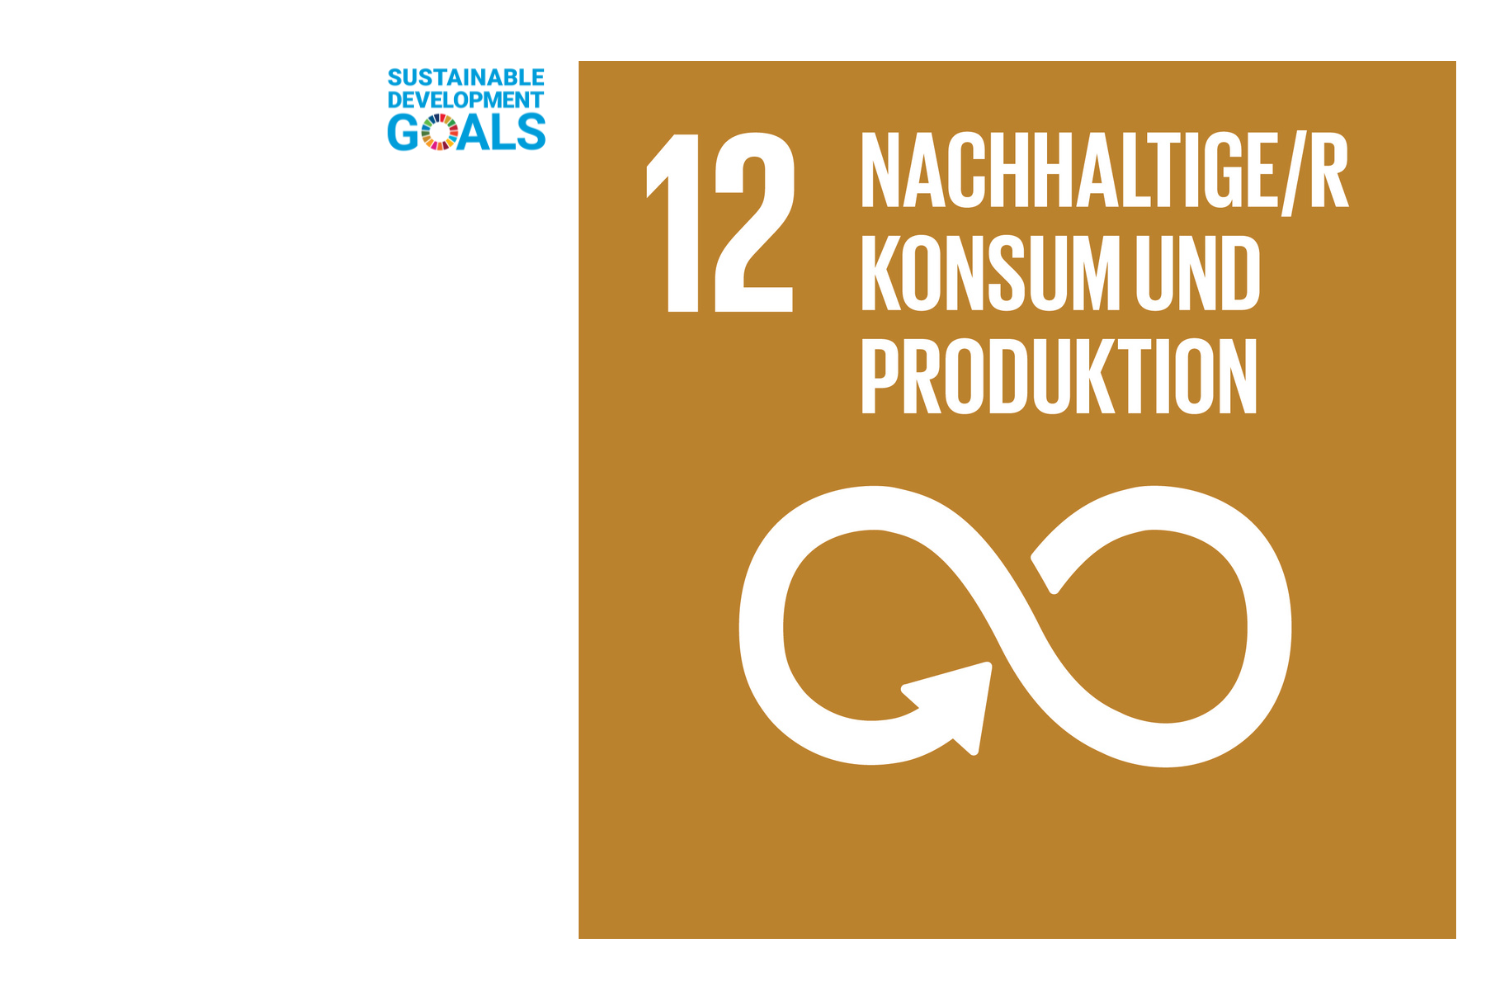 Nachhaltiger Konsum und Produktion - SDG 12